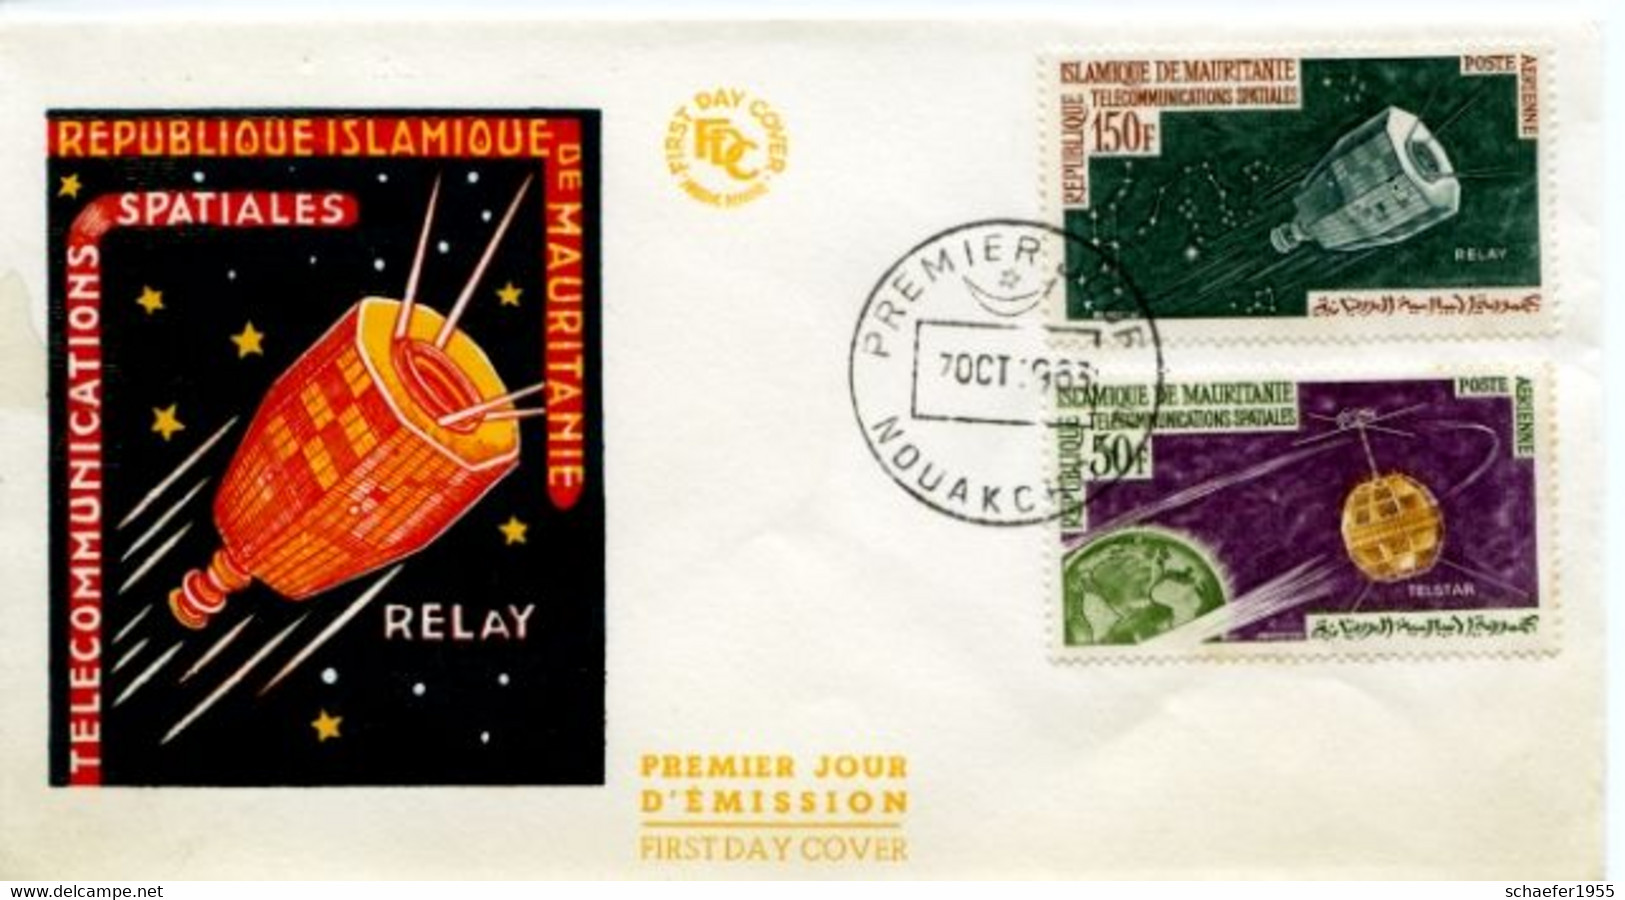 Mauritanie, Mauretanien 1965 FDC + Stamp Telecommunication - Africa